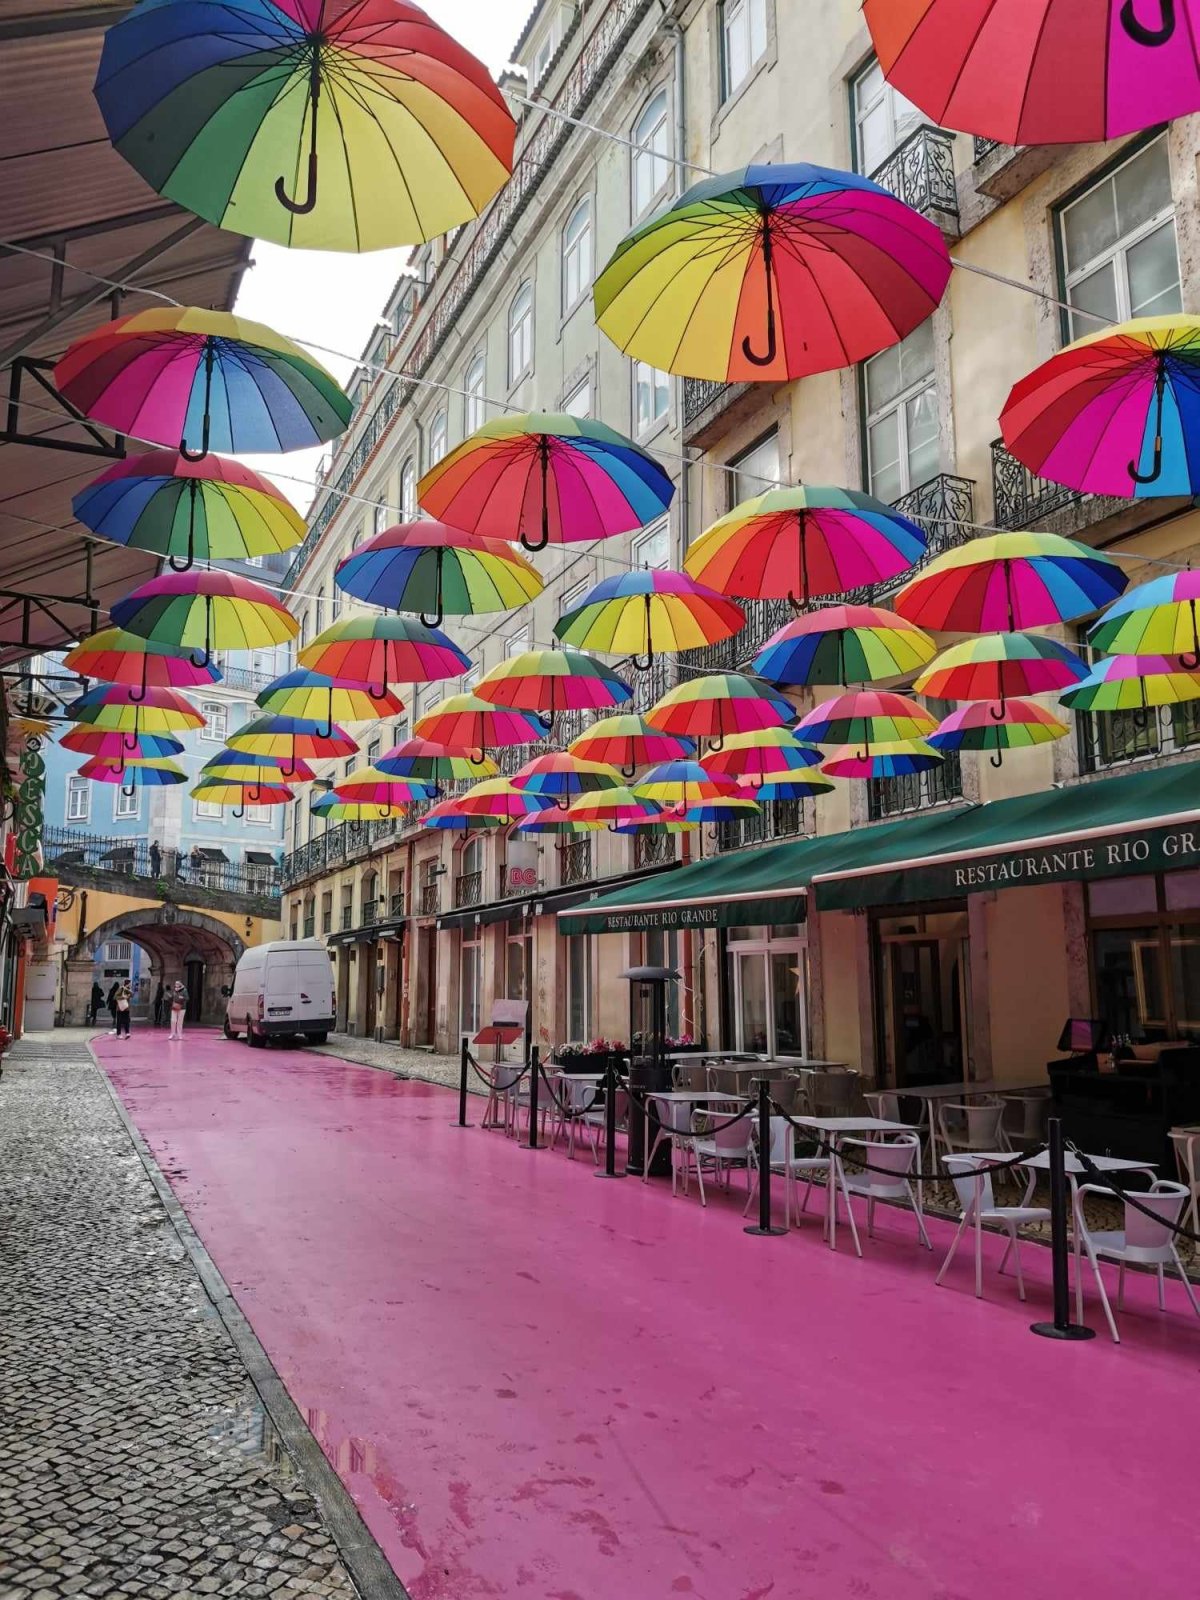 Ulice s duhovými deštníky jako by dnes patřila ke koloritu každého většího města